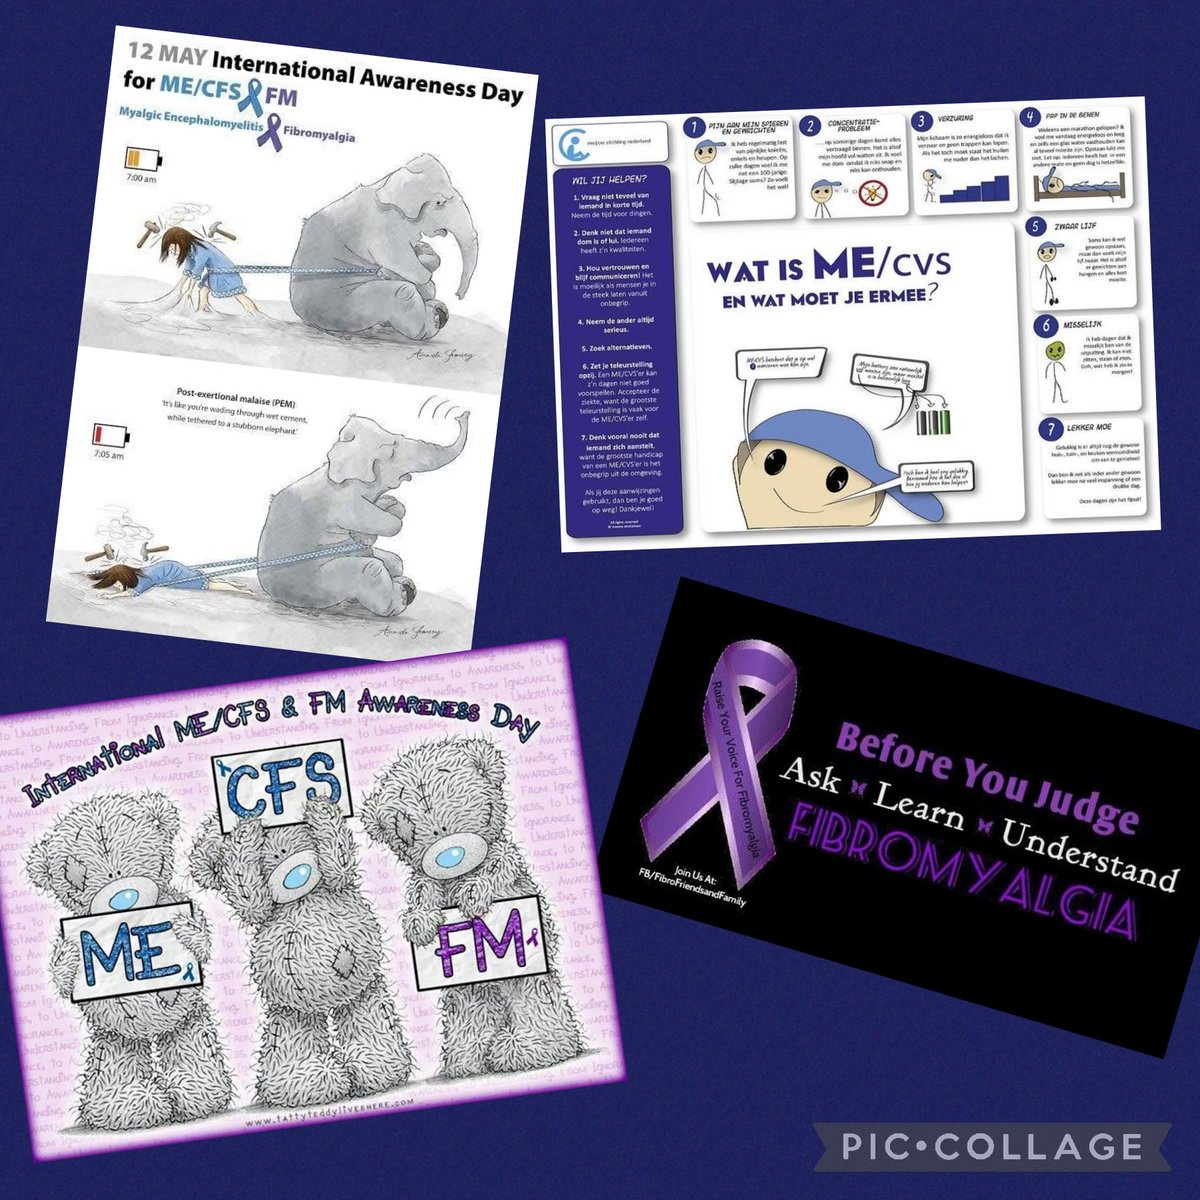 12mei fibromyalgie  me/cvs awernessday 💜💙 #FibromyalgiaAwarenessDay #MECFS #Fibromyalgia #mecvsawernessday #mecvs #crhonischziek #crhonicillnes